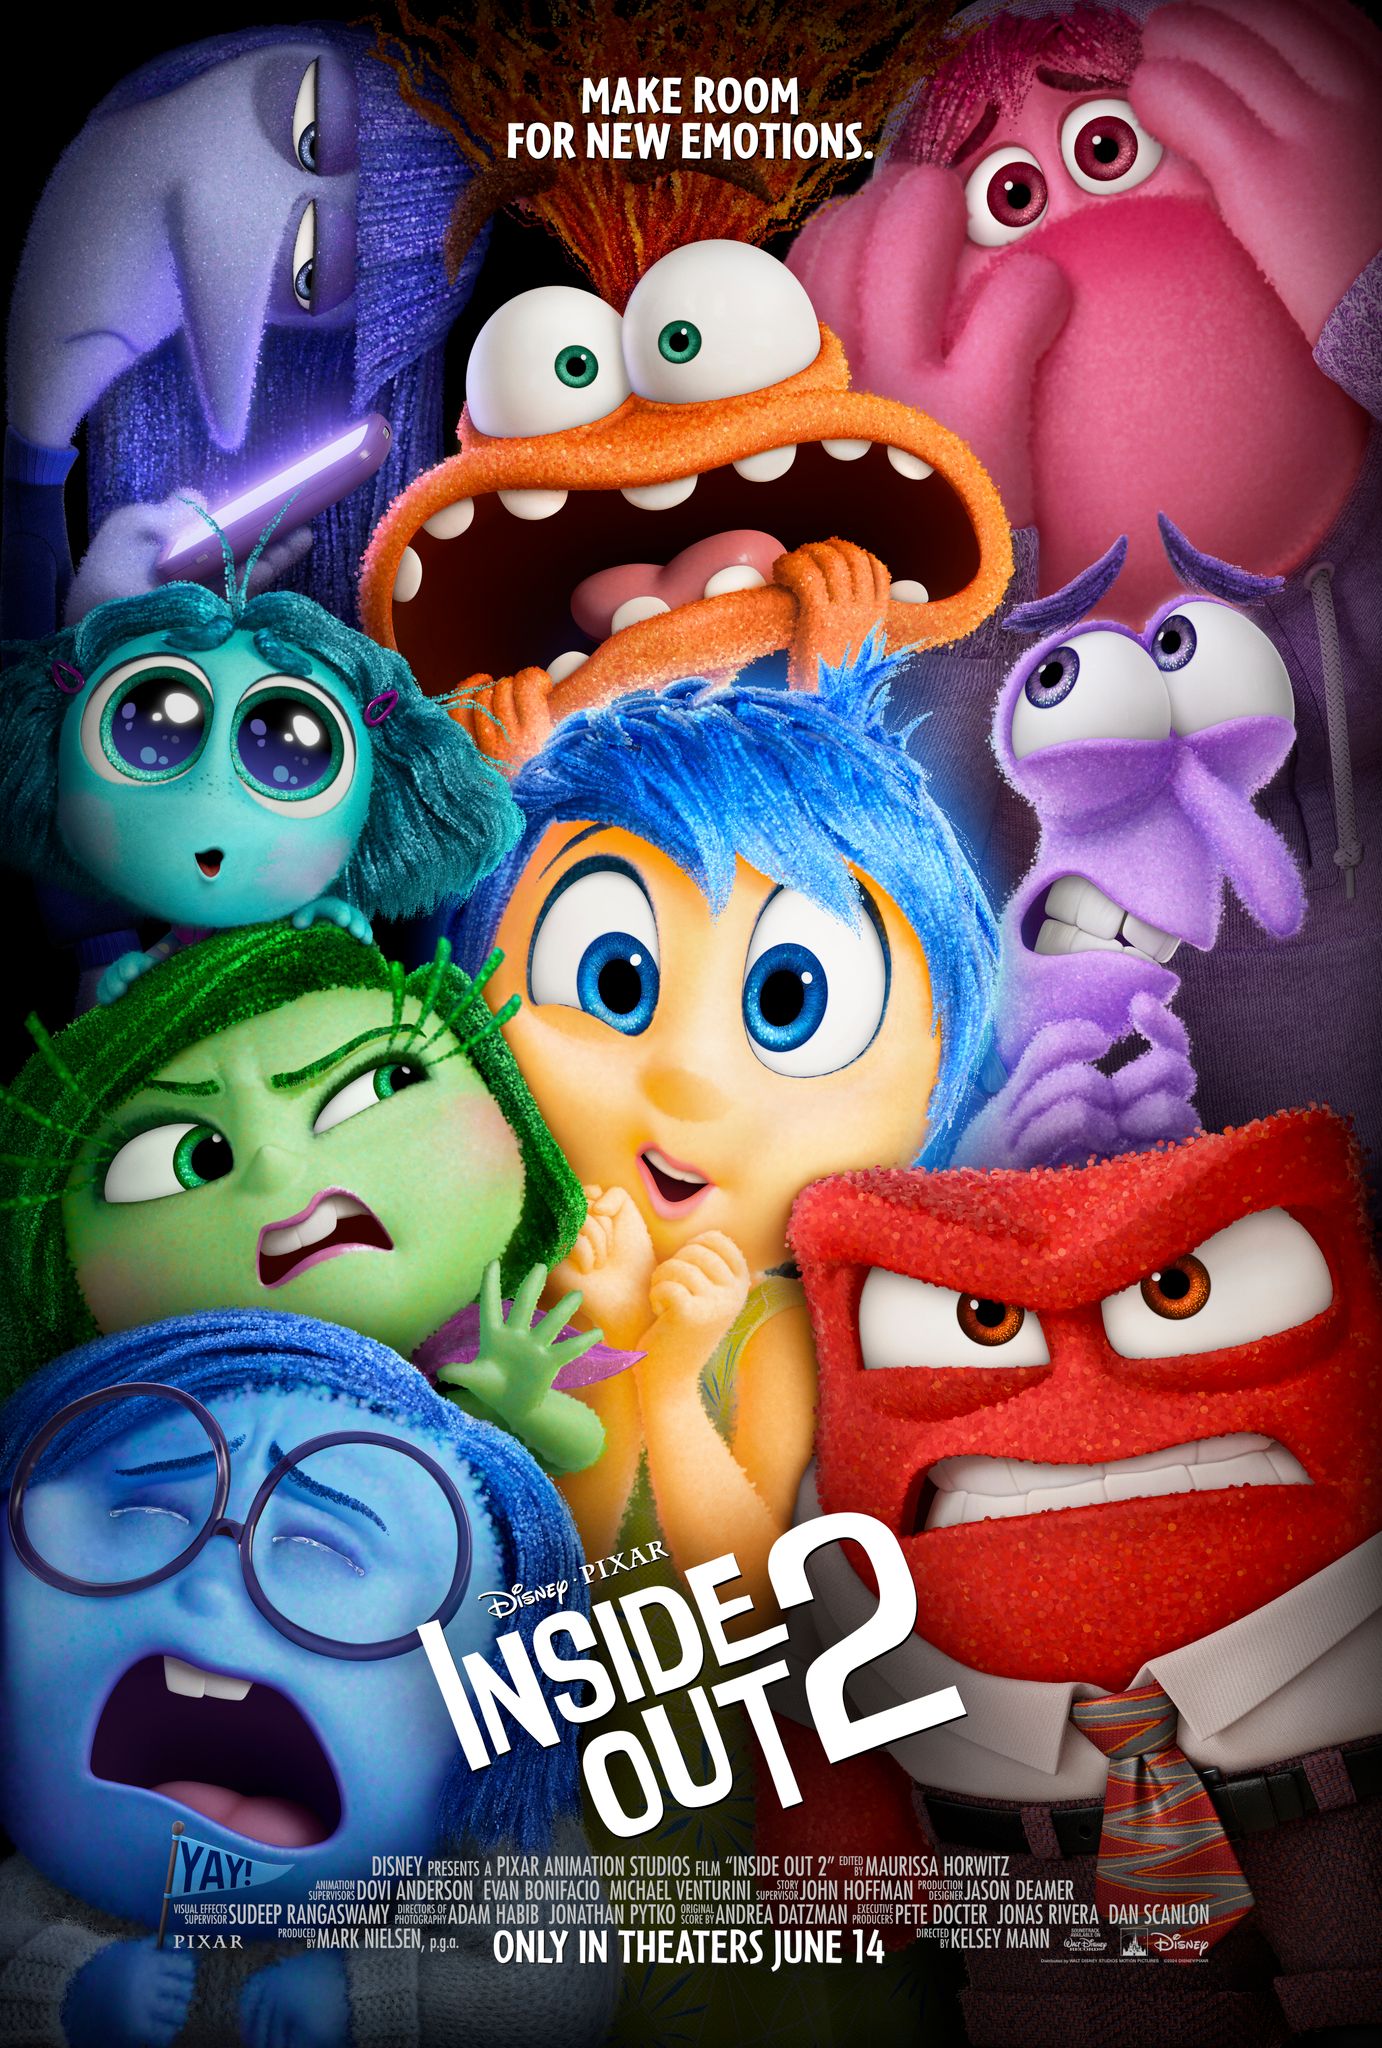 Plakat Inside Out 2 przedstawiający radość i inne emocje złączone razem